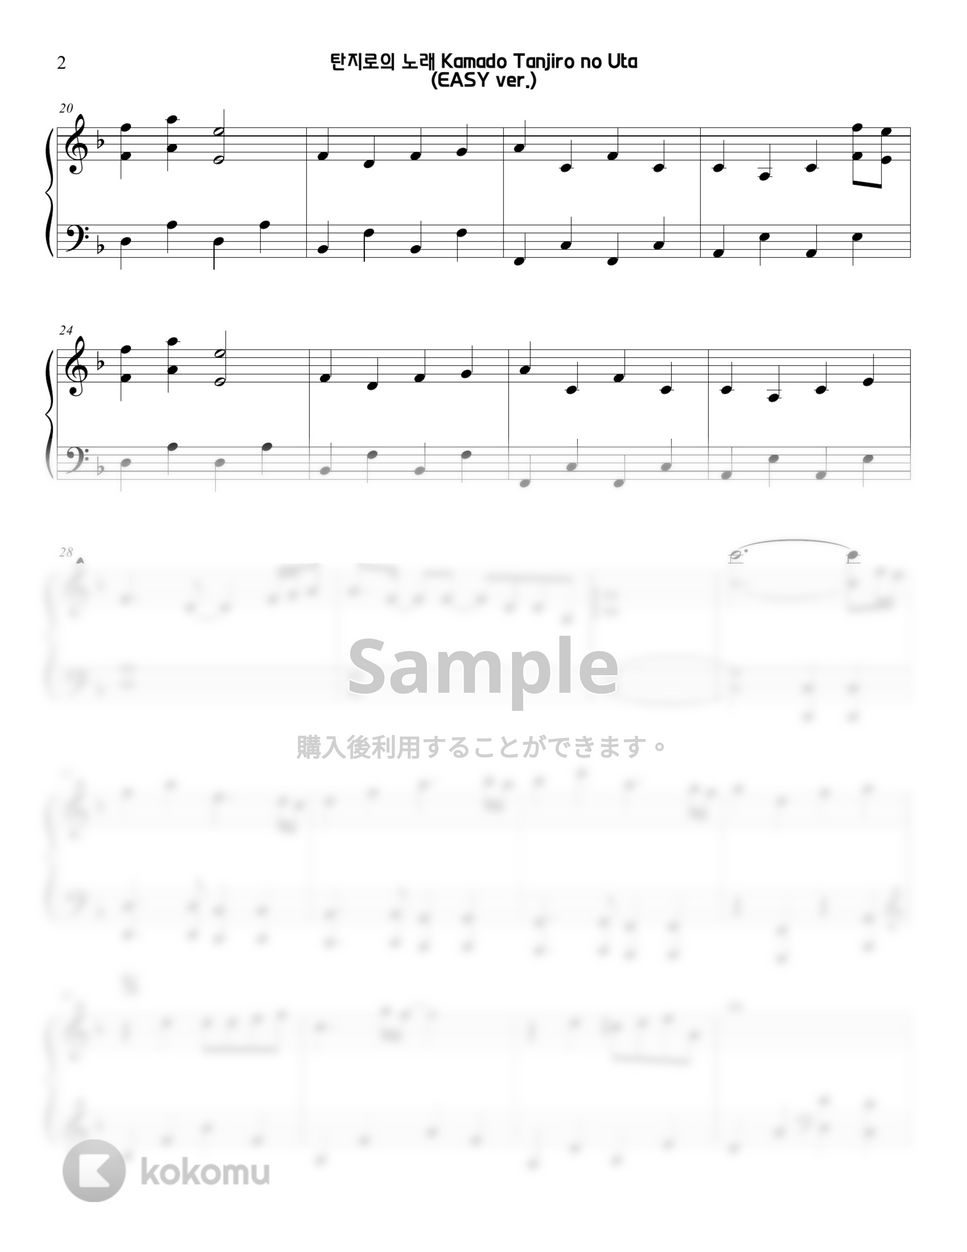 鬼滅の刃 - 竈門炭治郎のうた (EASY) by Sunny Fingers Piano